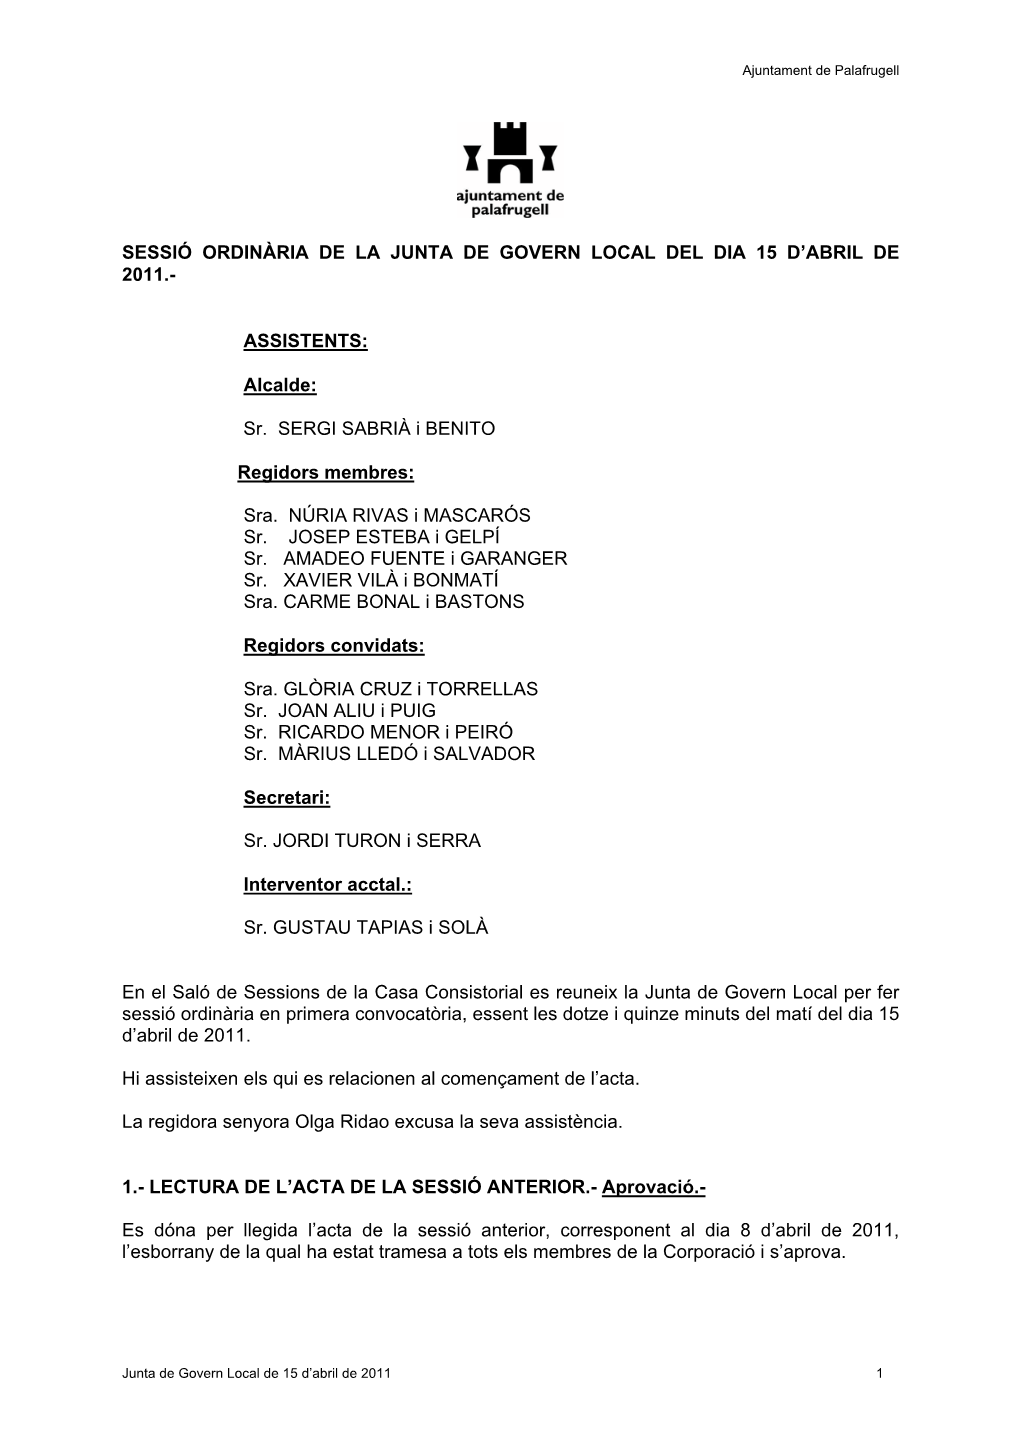 Acta De La Junta De Govern Local De 15 D'abril De 2011